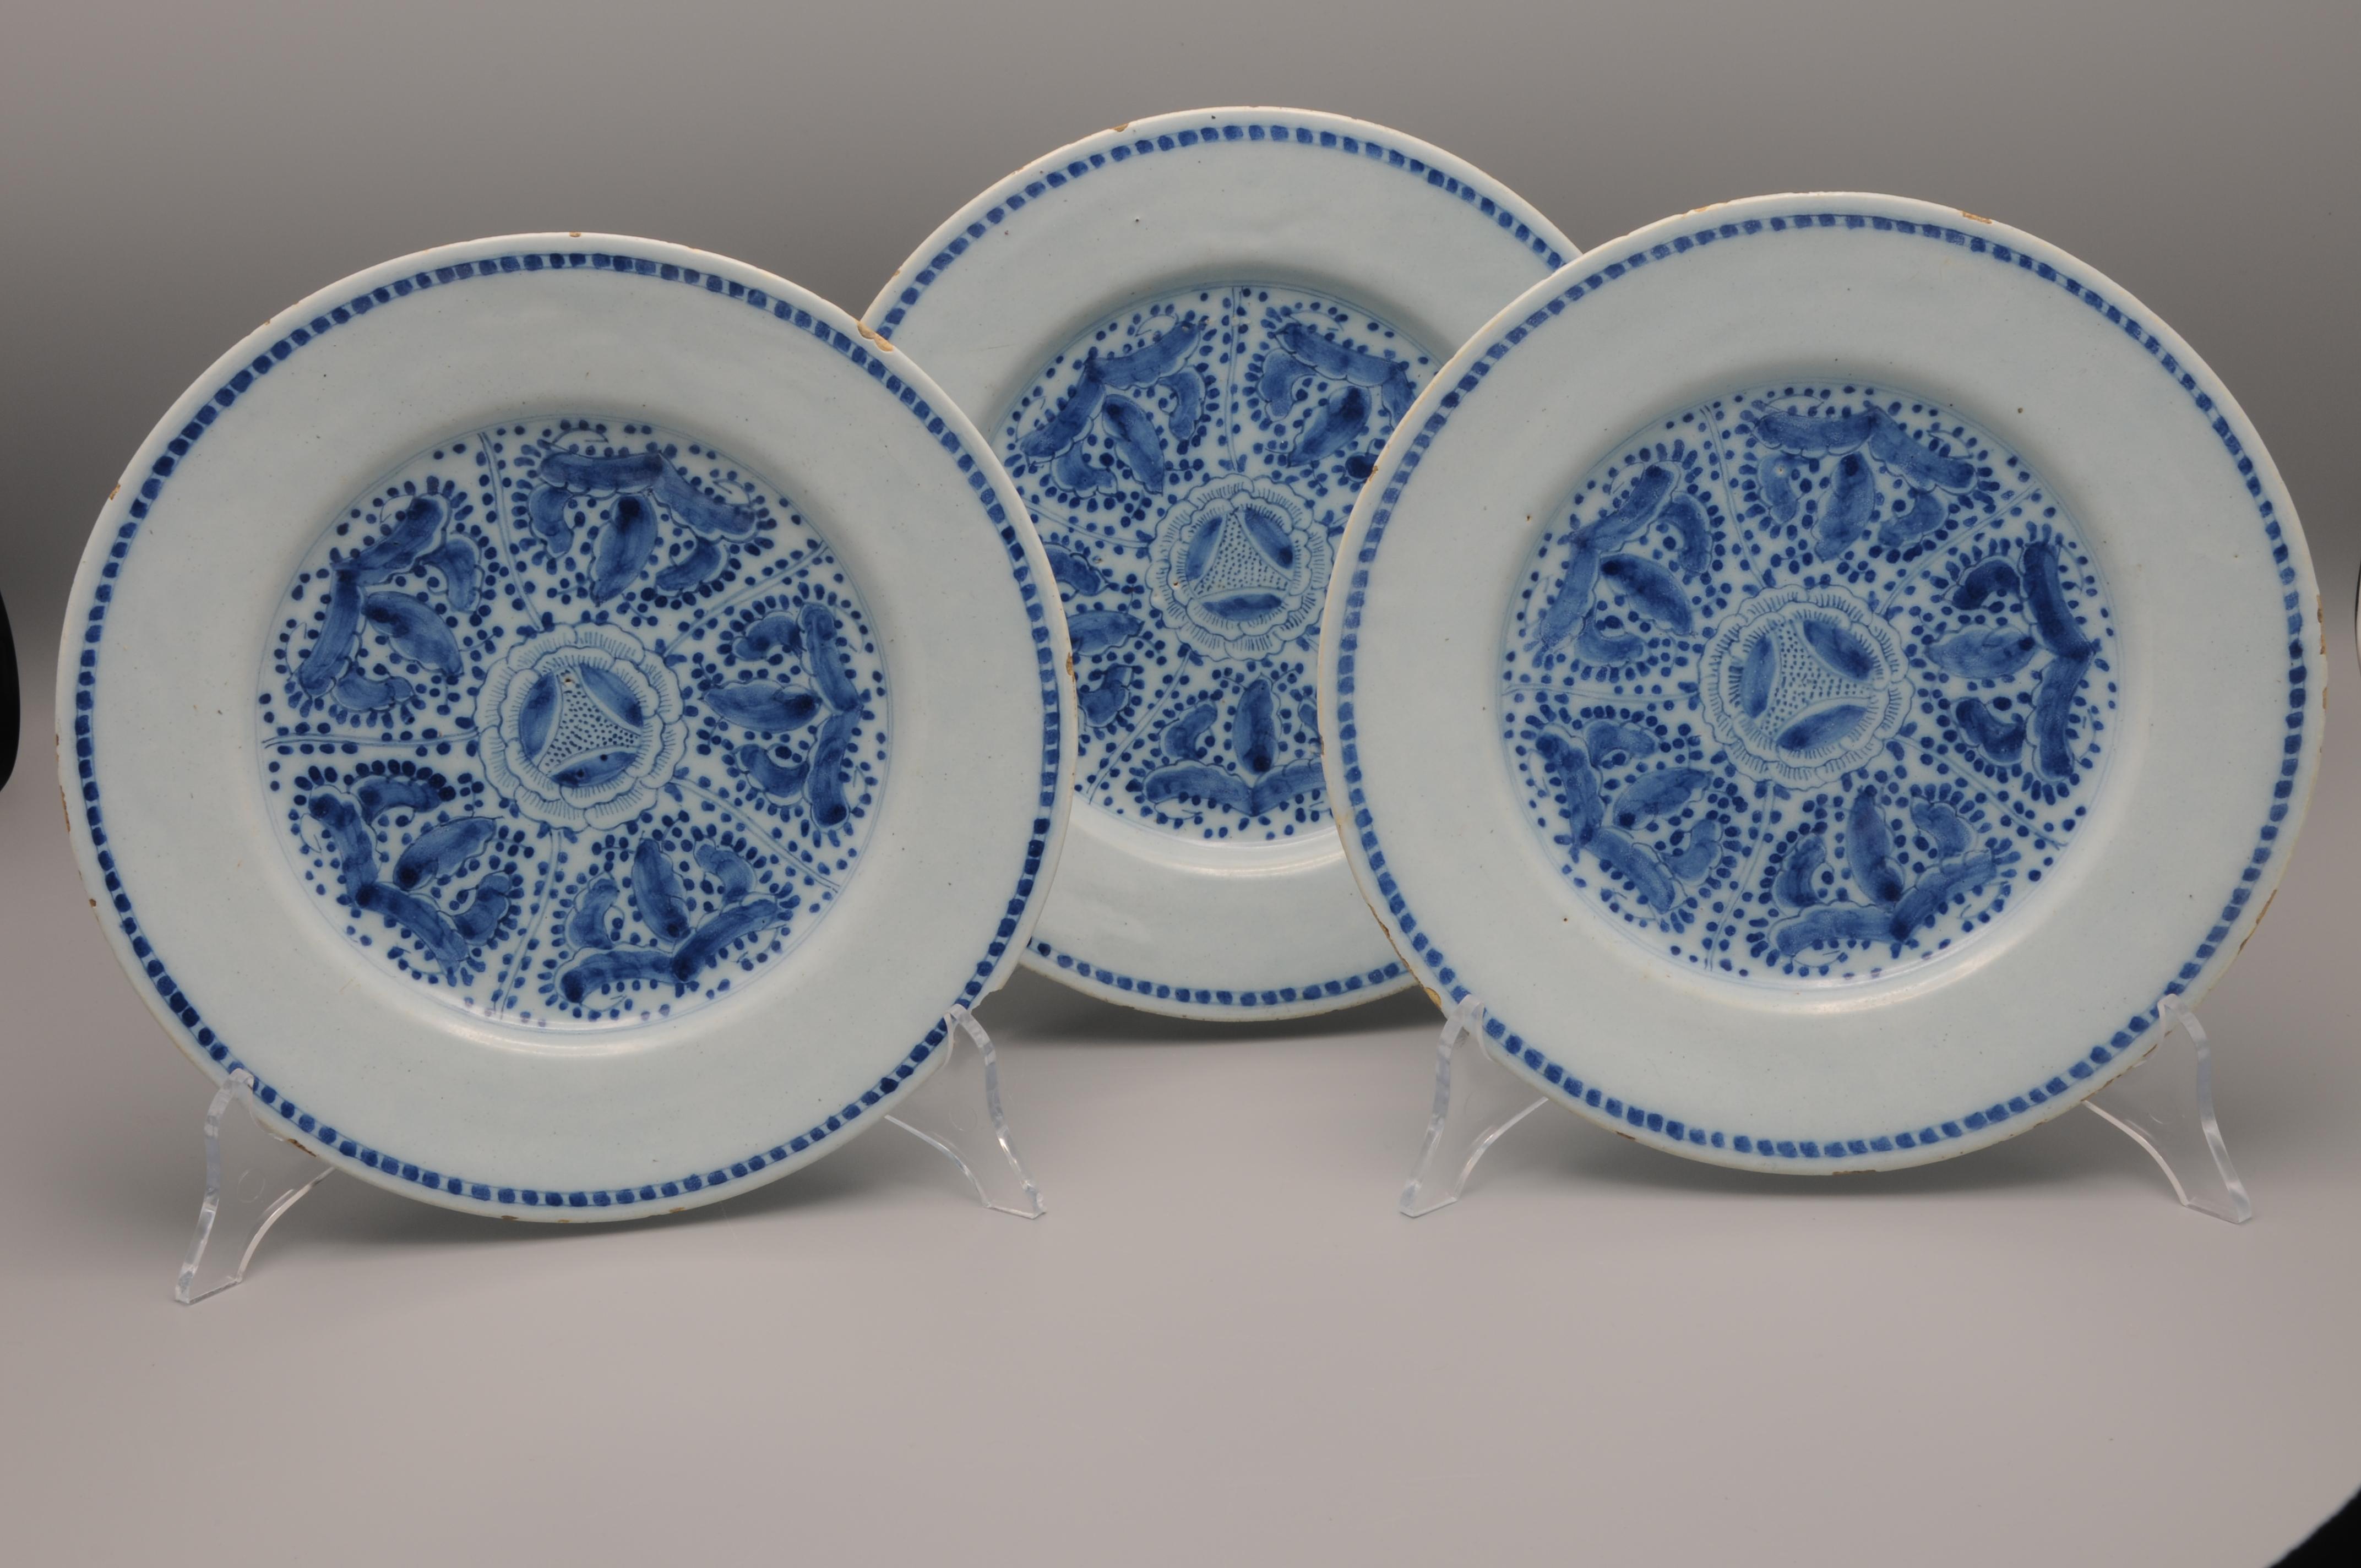 Ensemble de trois assiettes en faïence hollandaise bleue avec un rare décor de chinoiserie composé d'une décoration géométrique centrale de fleurs.
Non marqué

En bon état : seulement l'usure habituelle du bord. 